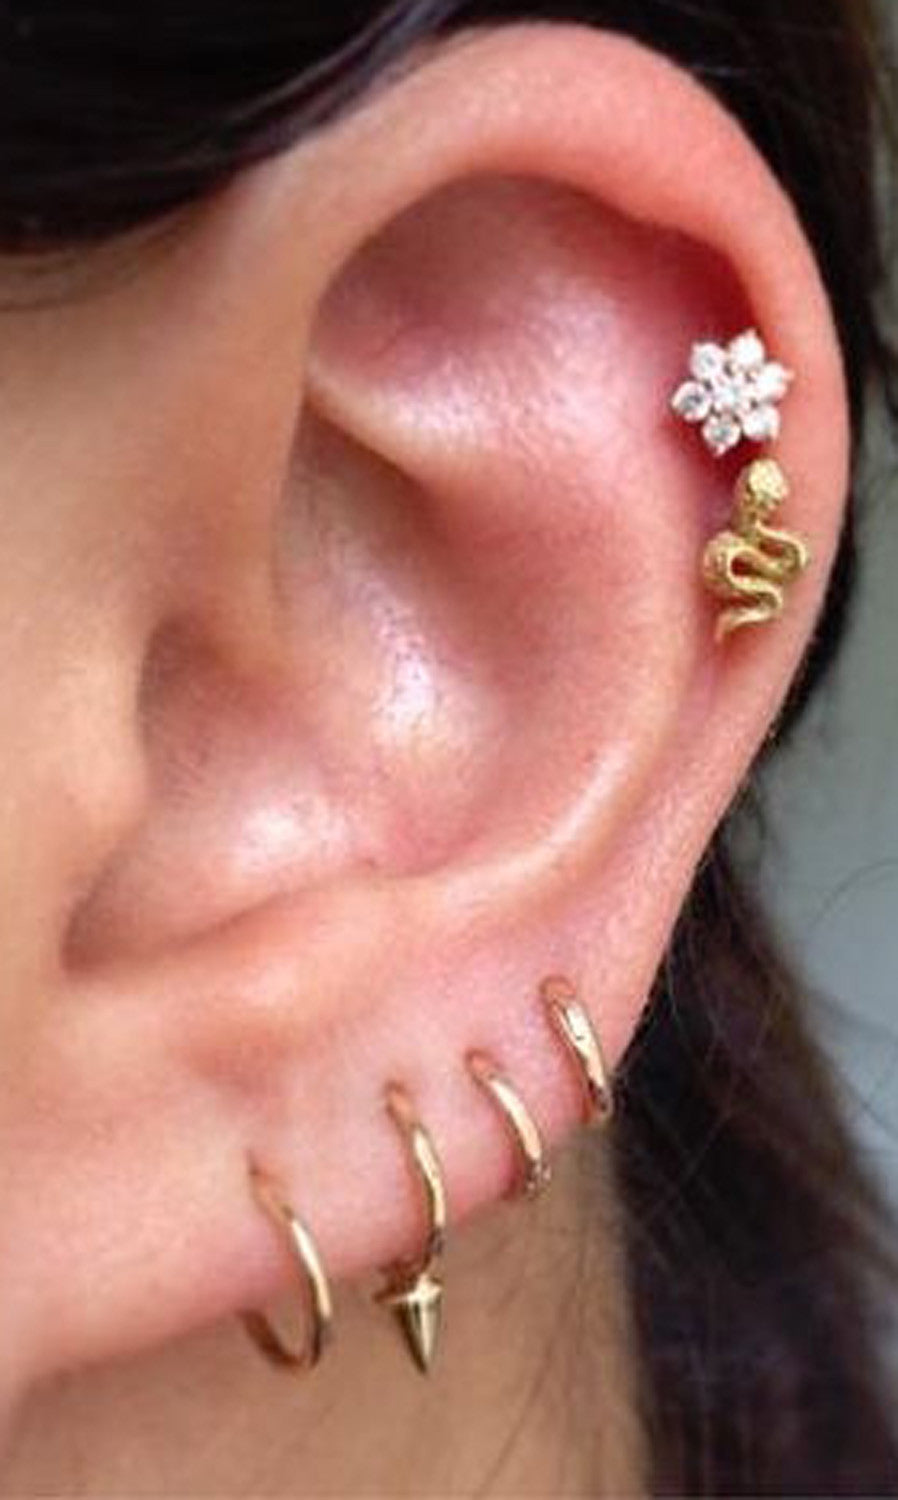 Cute Ear Piercing Ideas for Women - Crystal Flower Helix Piercing Jewelry - Gold Snake Cartilage Piercing Stud  - Earring Jewellery - MyBodiArt.com